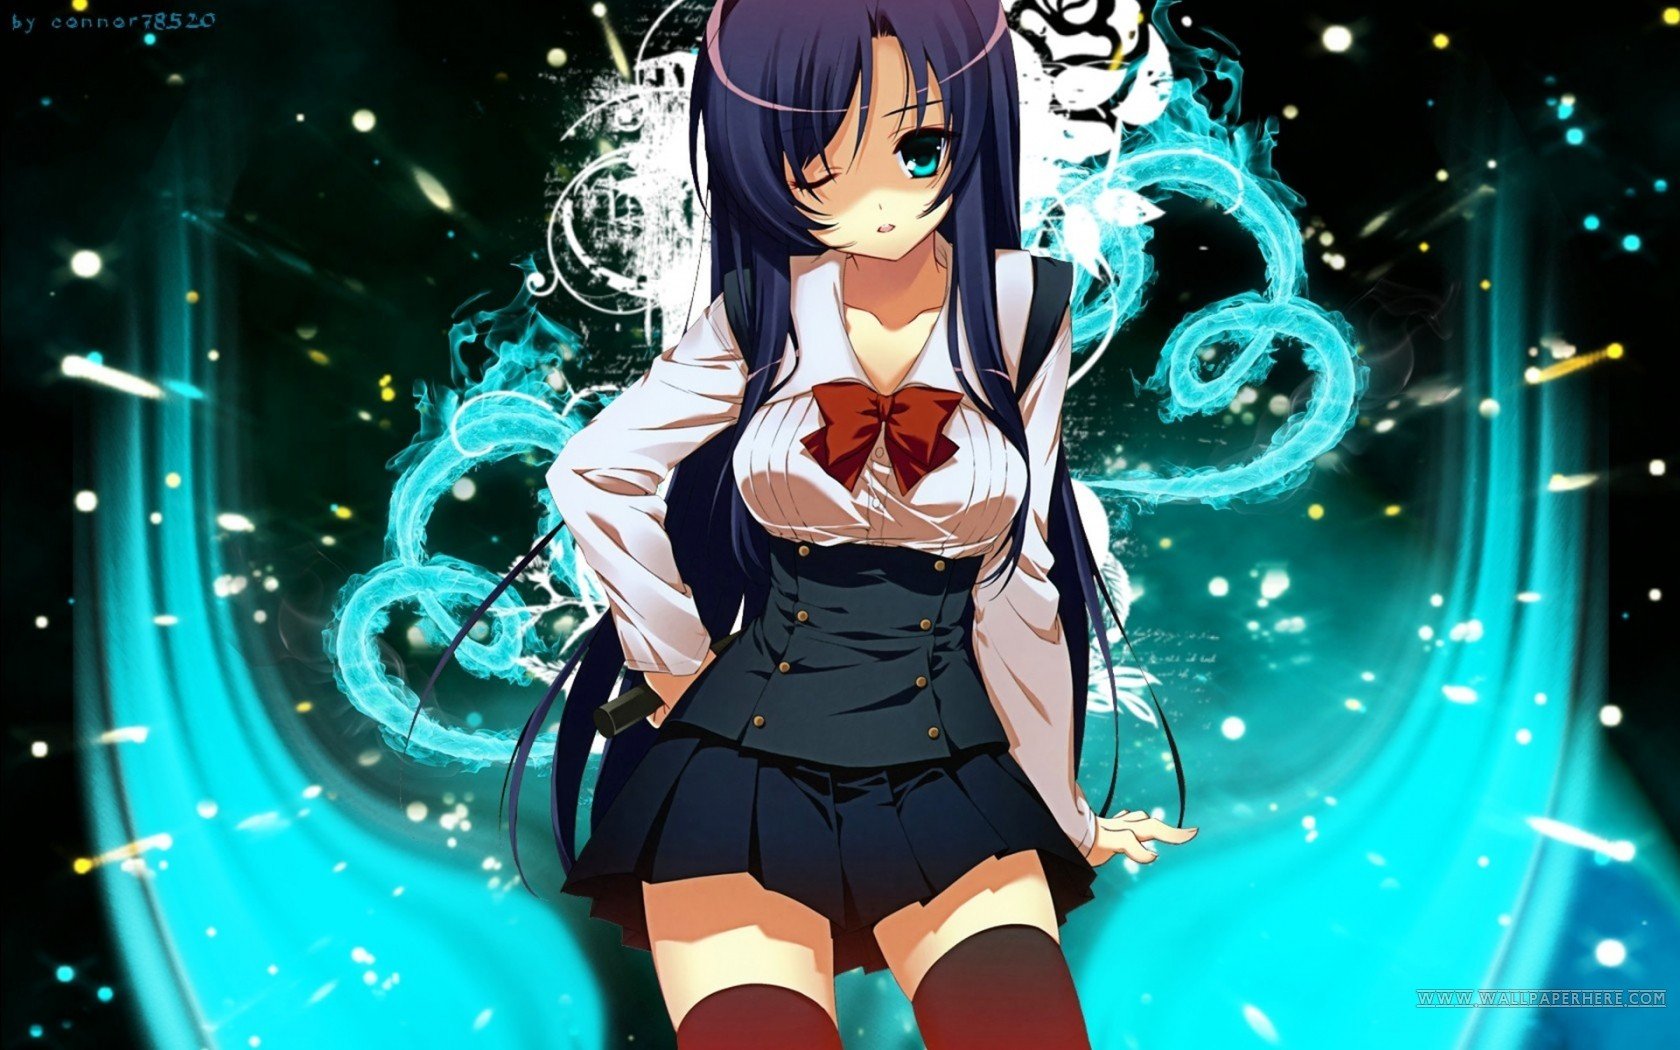 Imagenes De Anime School - HD Wallpaper 